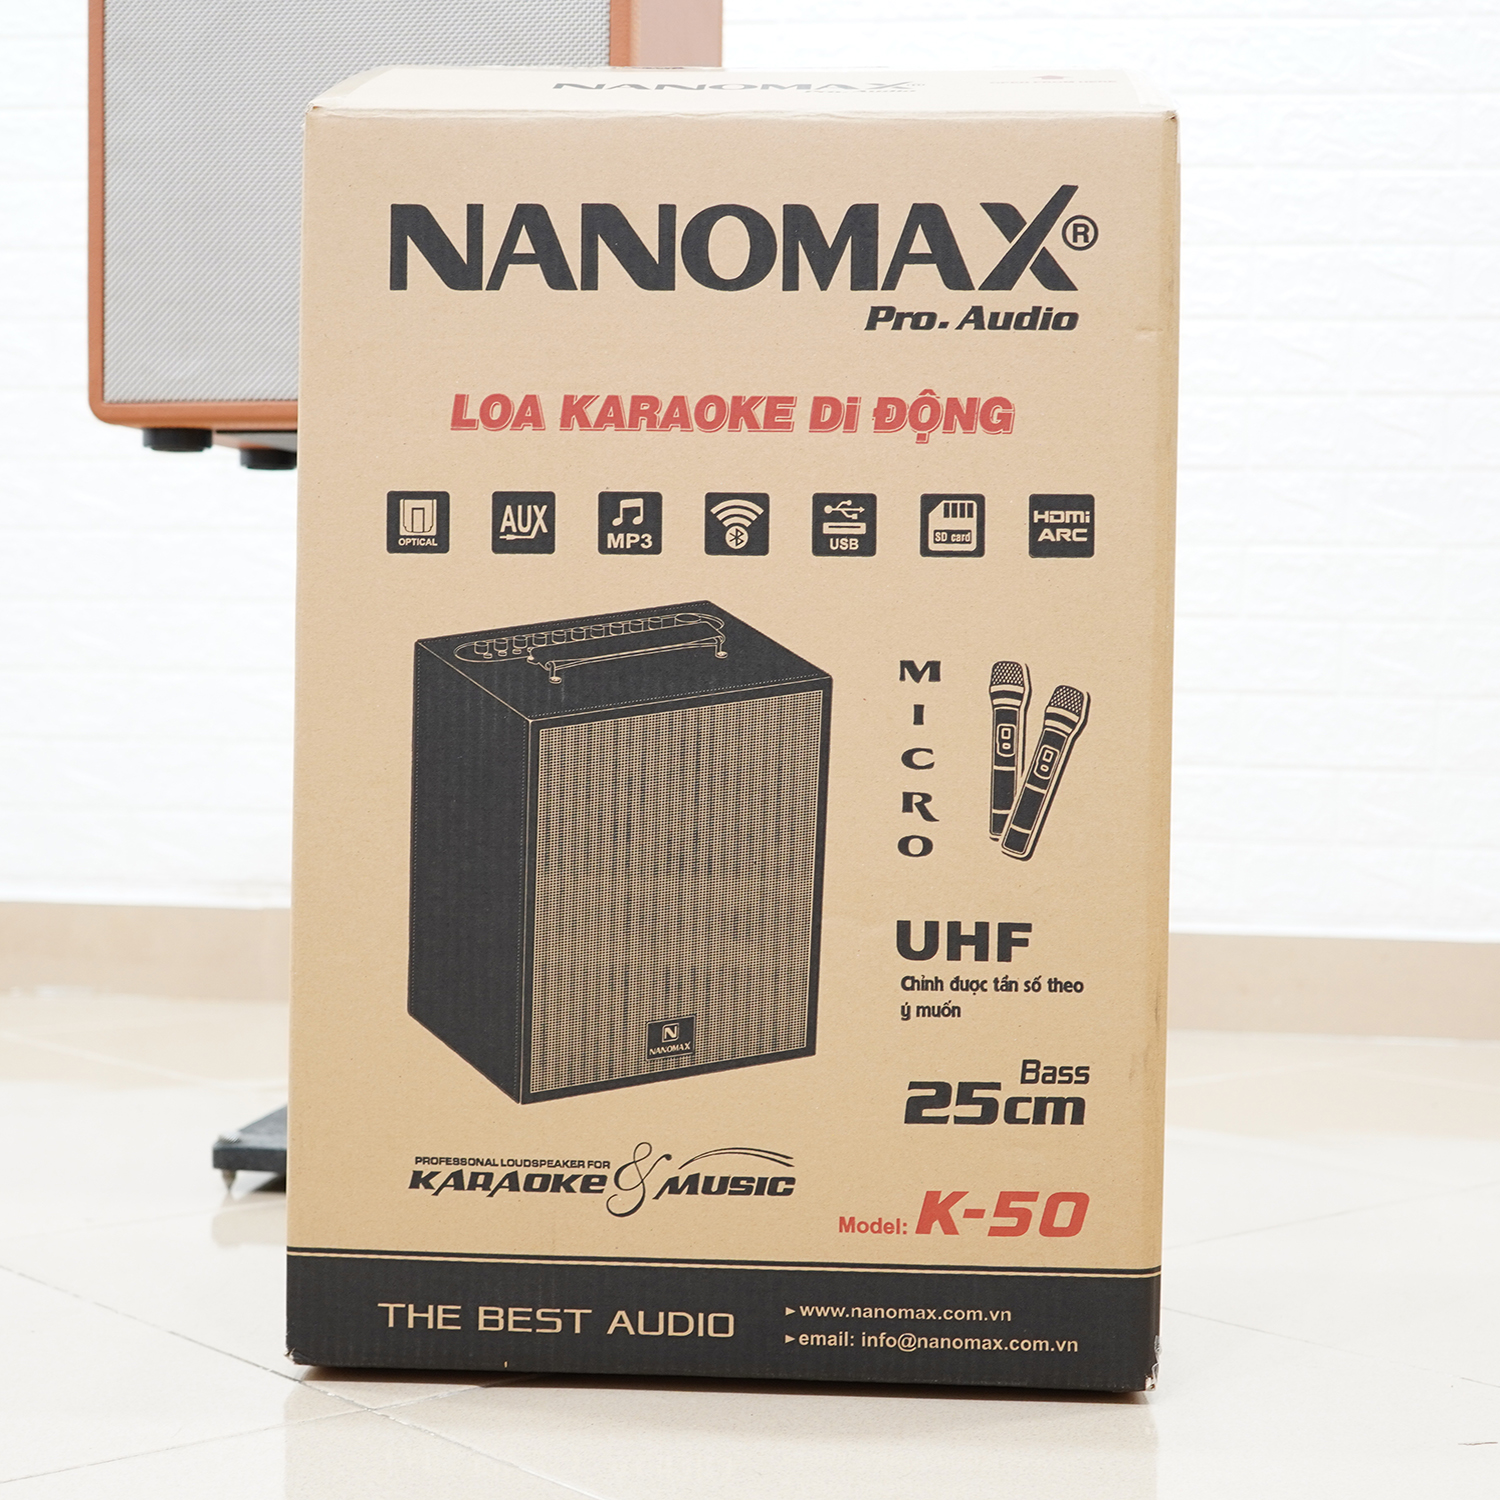 Loa Kéo Karaoke Xách Tay Nanomax K-50 K50 Bass 250cm Công Suất 360w Bluetooth Hàng Chính Hãng